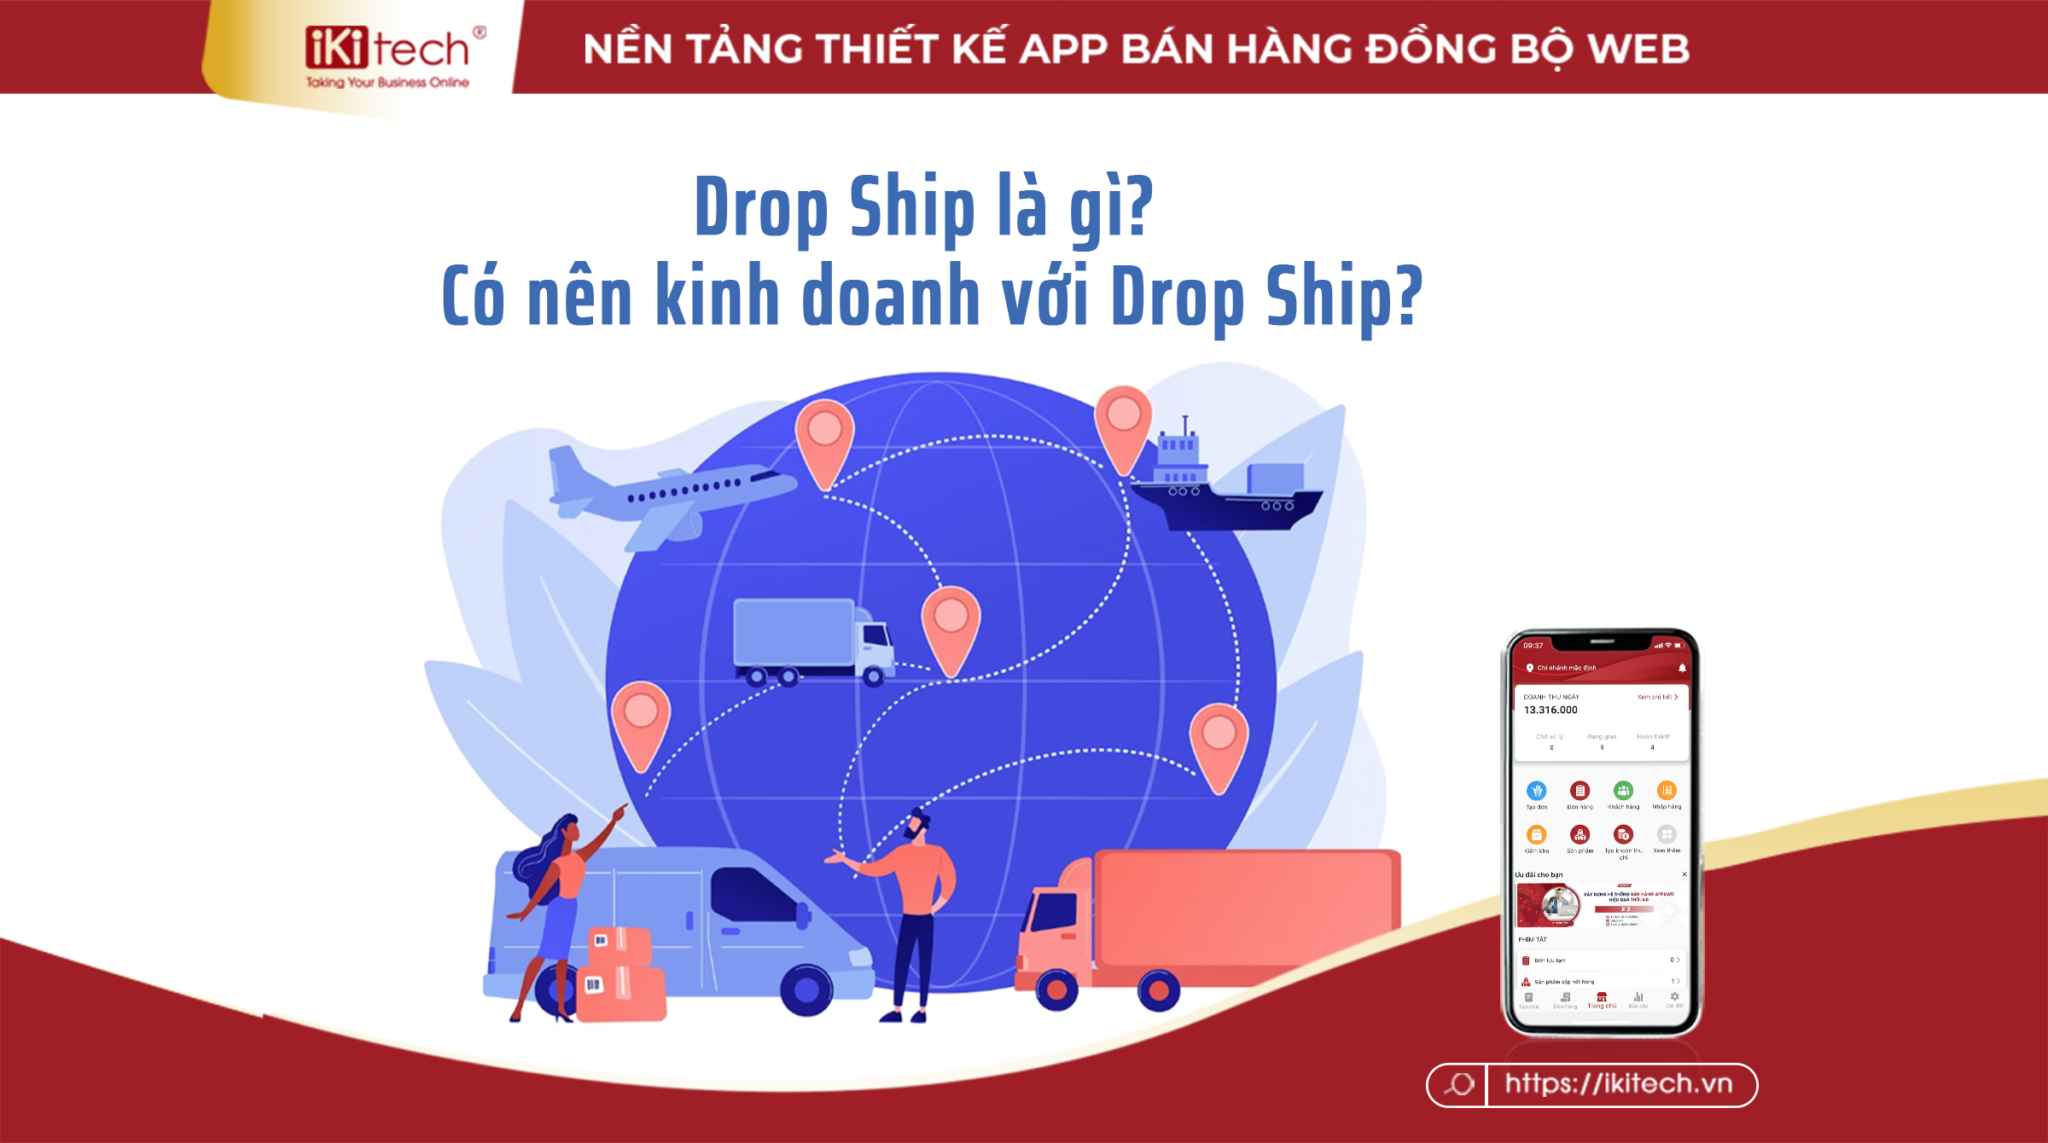 Drop Ship là gì? Có nên kinh doanh với Drop Ship?